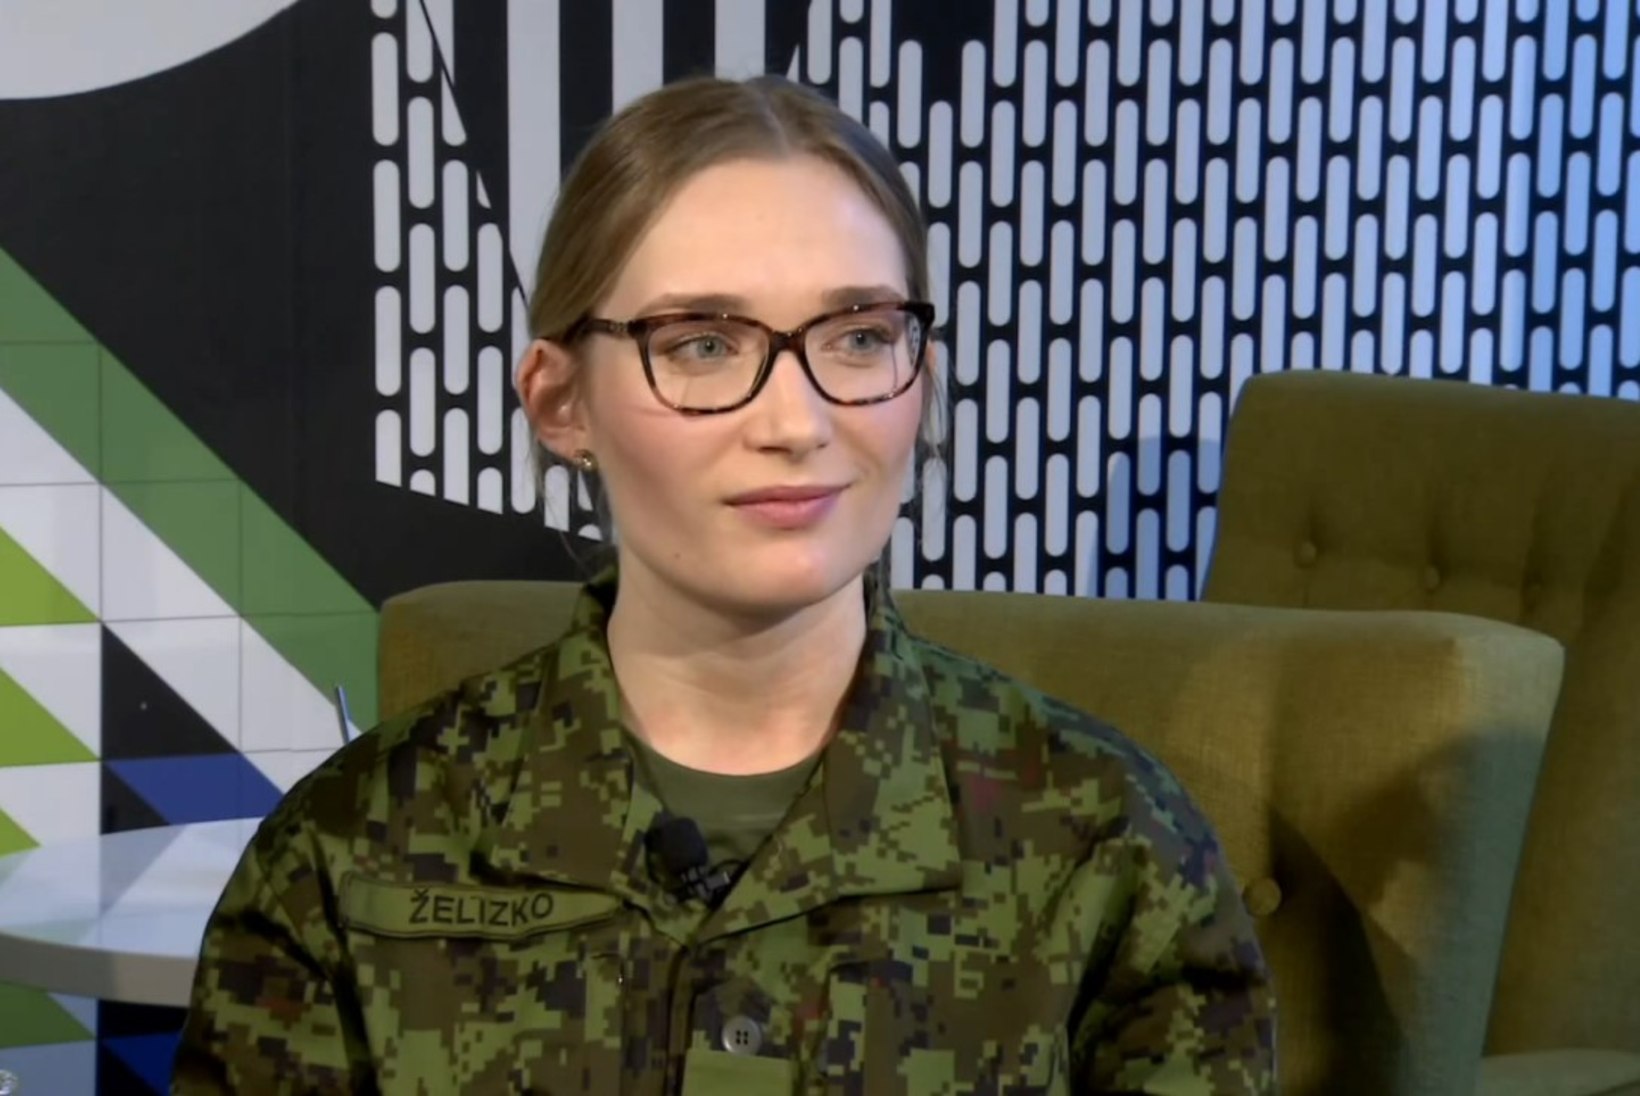 "Naised, kes ei nuta": millal saab Eesti kaitsevägi esimese naiskindrali?